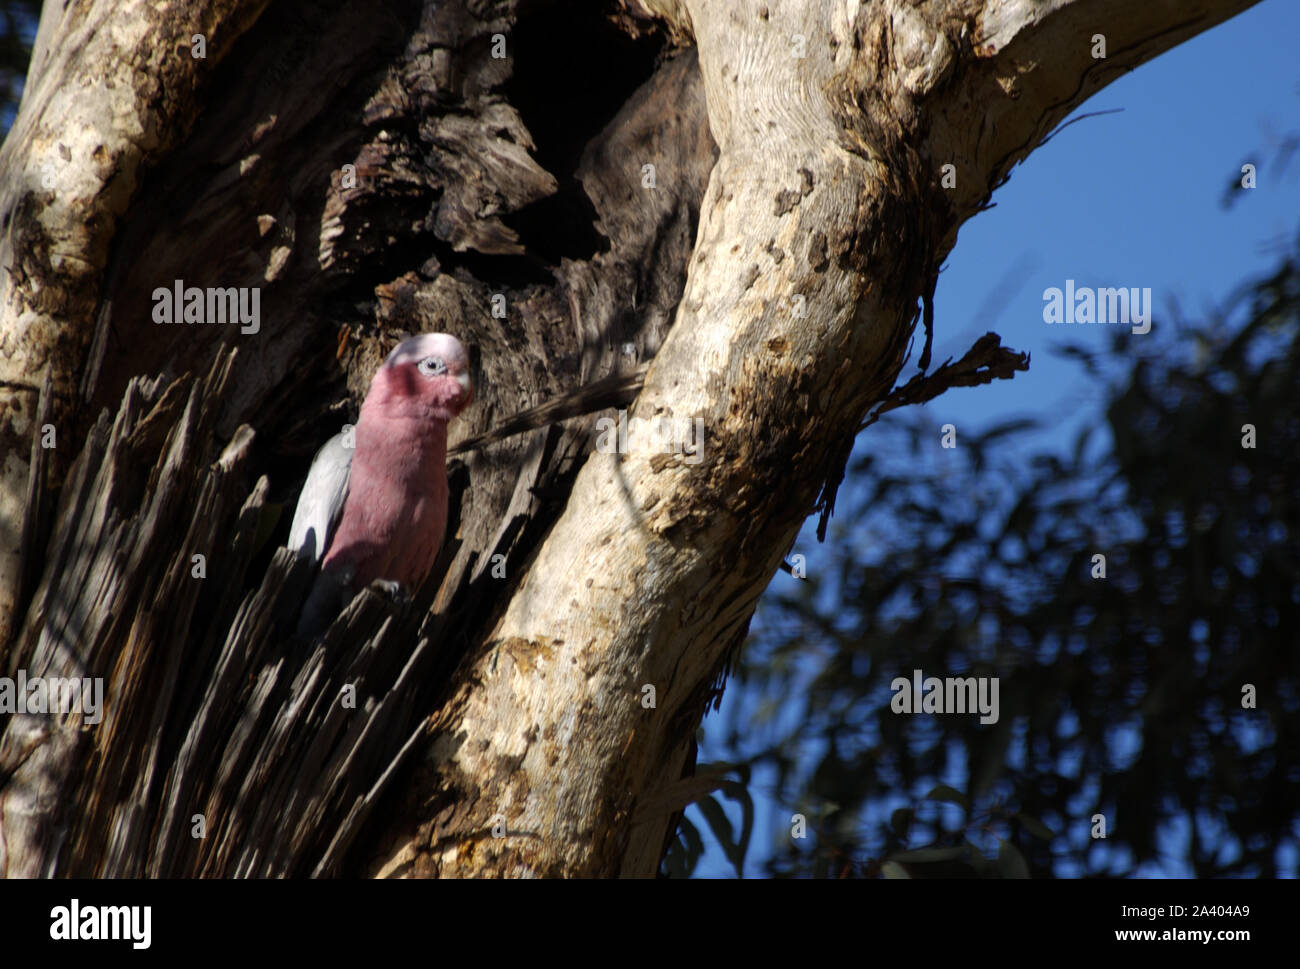 Eine australische GALAH im Nest in einem Baum hohl. GALAHS bauen Nester in Baumhöhlen oder ähnliches mit Blättern ausgekleidet. WESTERN AUSTRALIA. Stockfoto